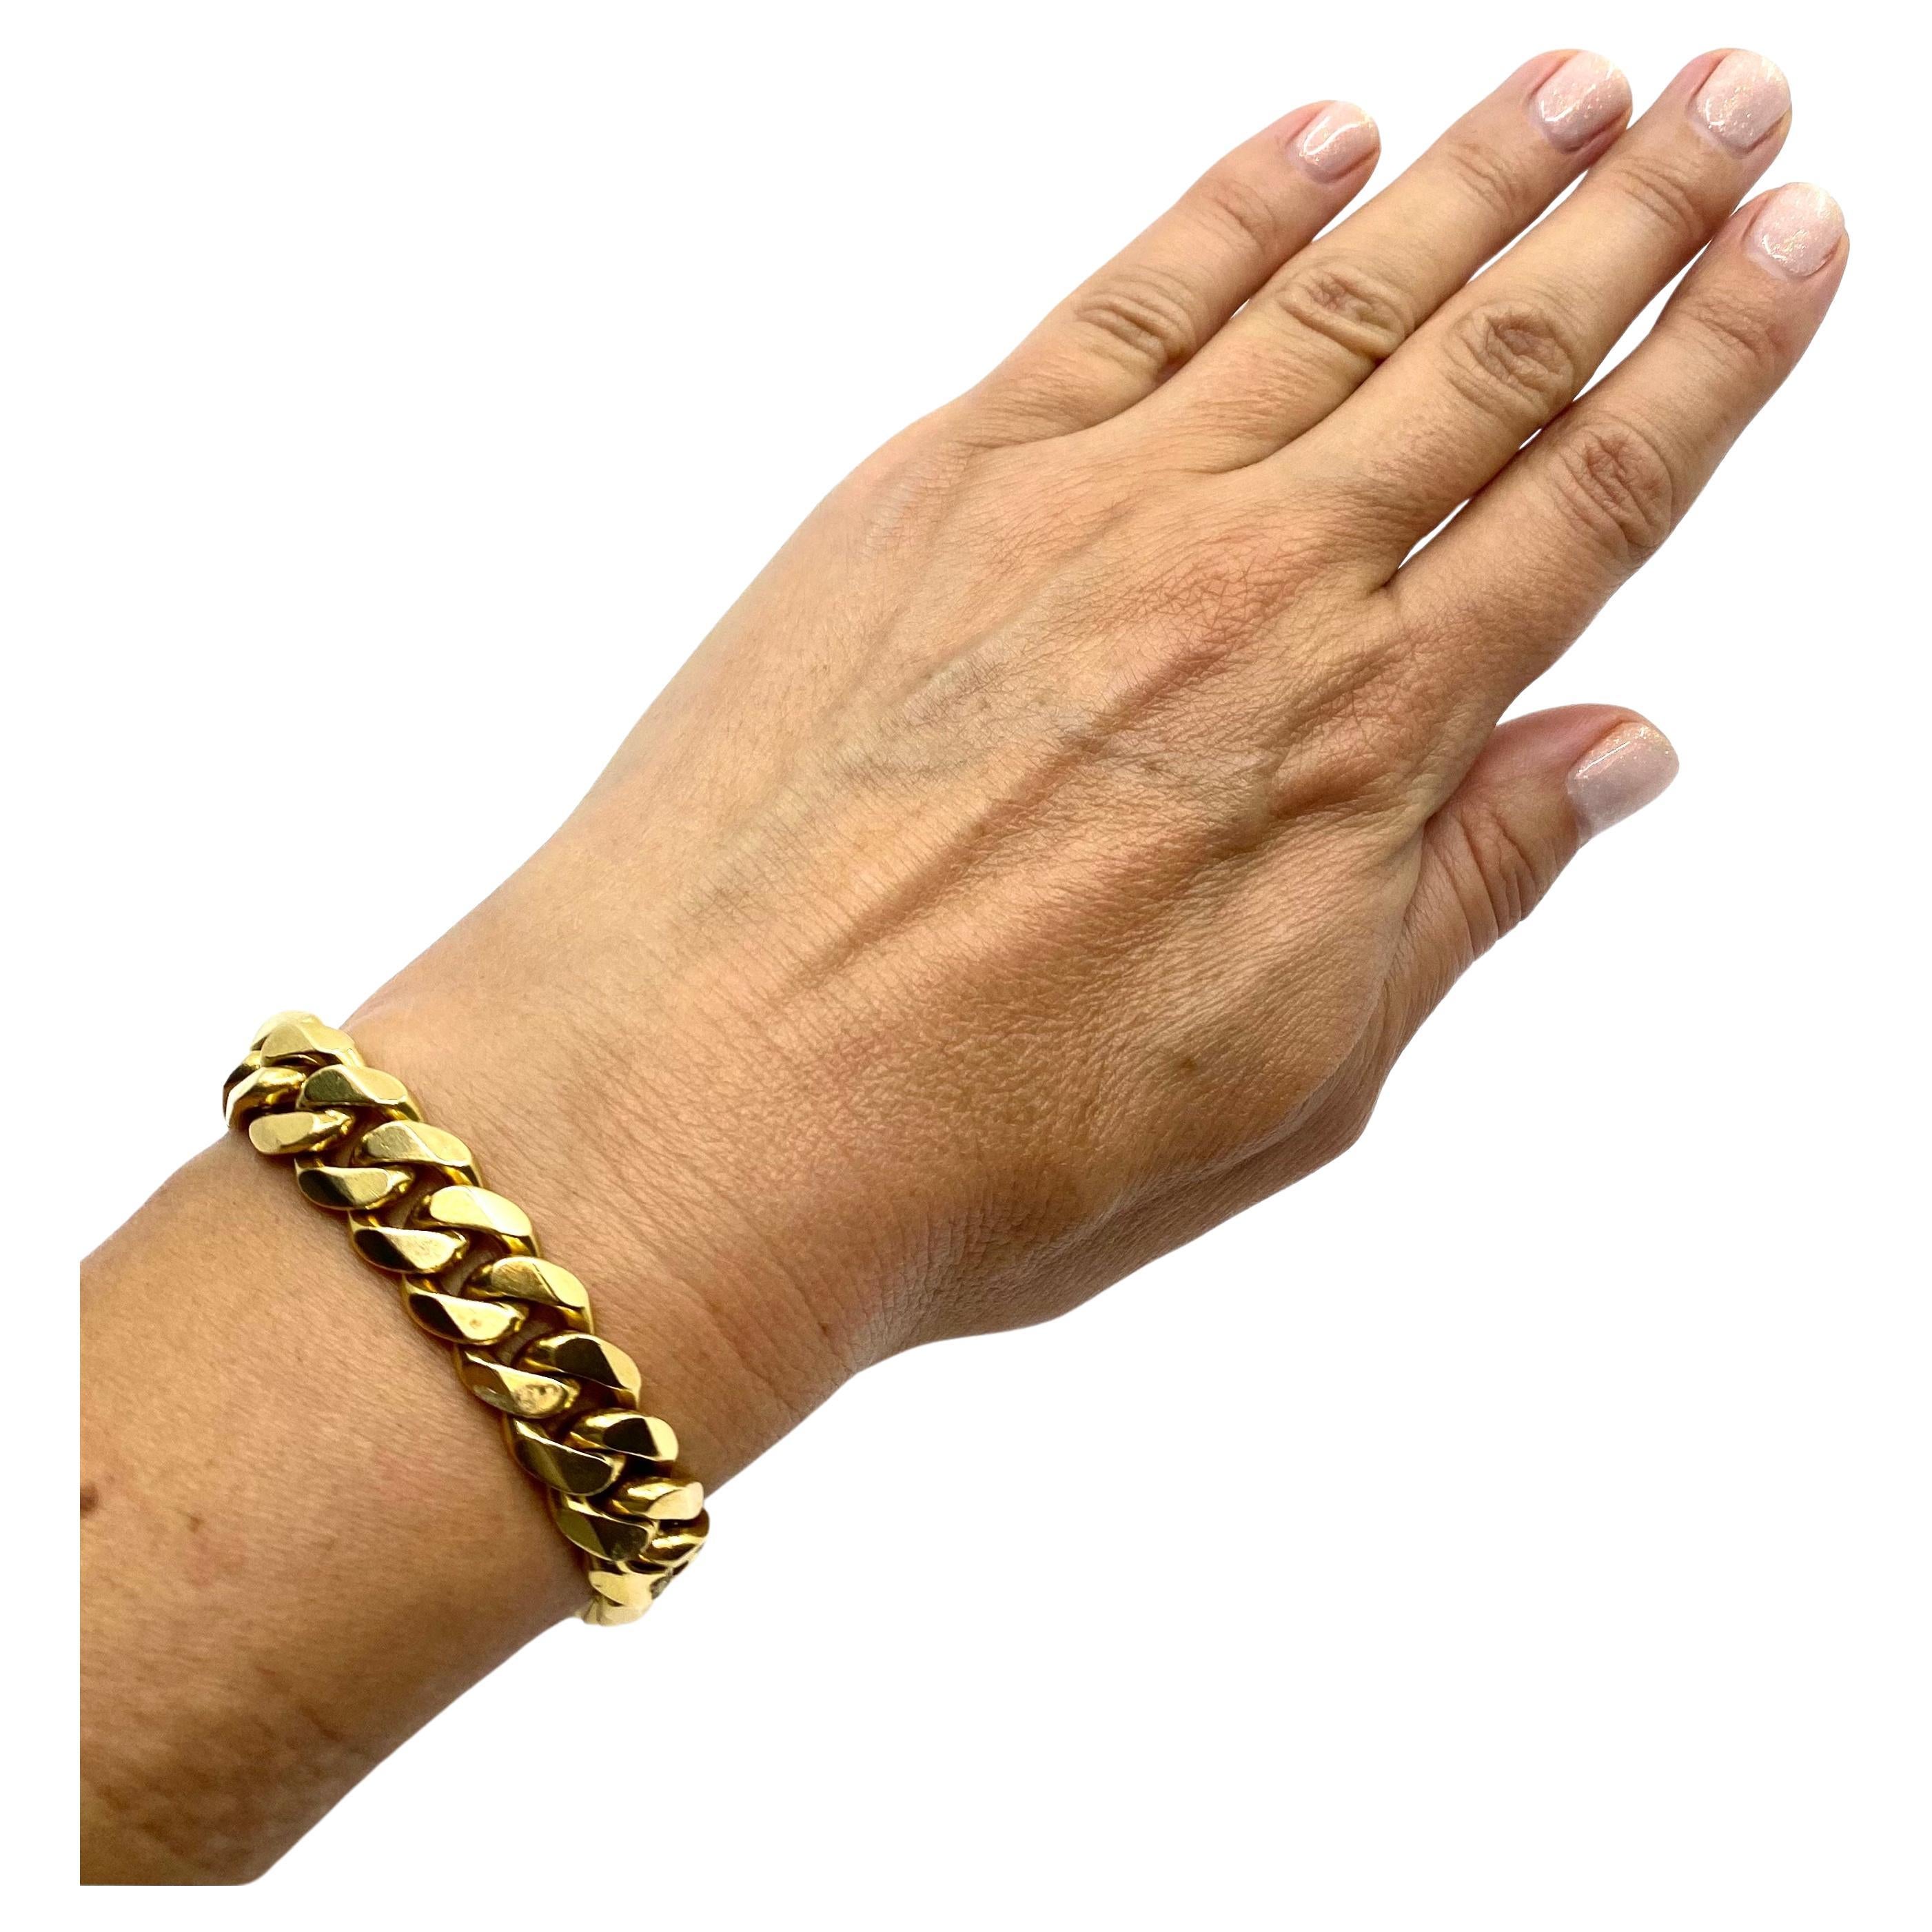 Superbe bracelet vintage en or de Cartier, composé d'une chaîne à maillons.u2028Une chaîne à maillons lourds et plats constitue un bracelet parfait en soi. Mais Cartier a fait un pas en avant et a ajouté des bords chanfreinés aux maillons. Il s'agit